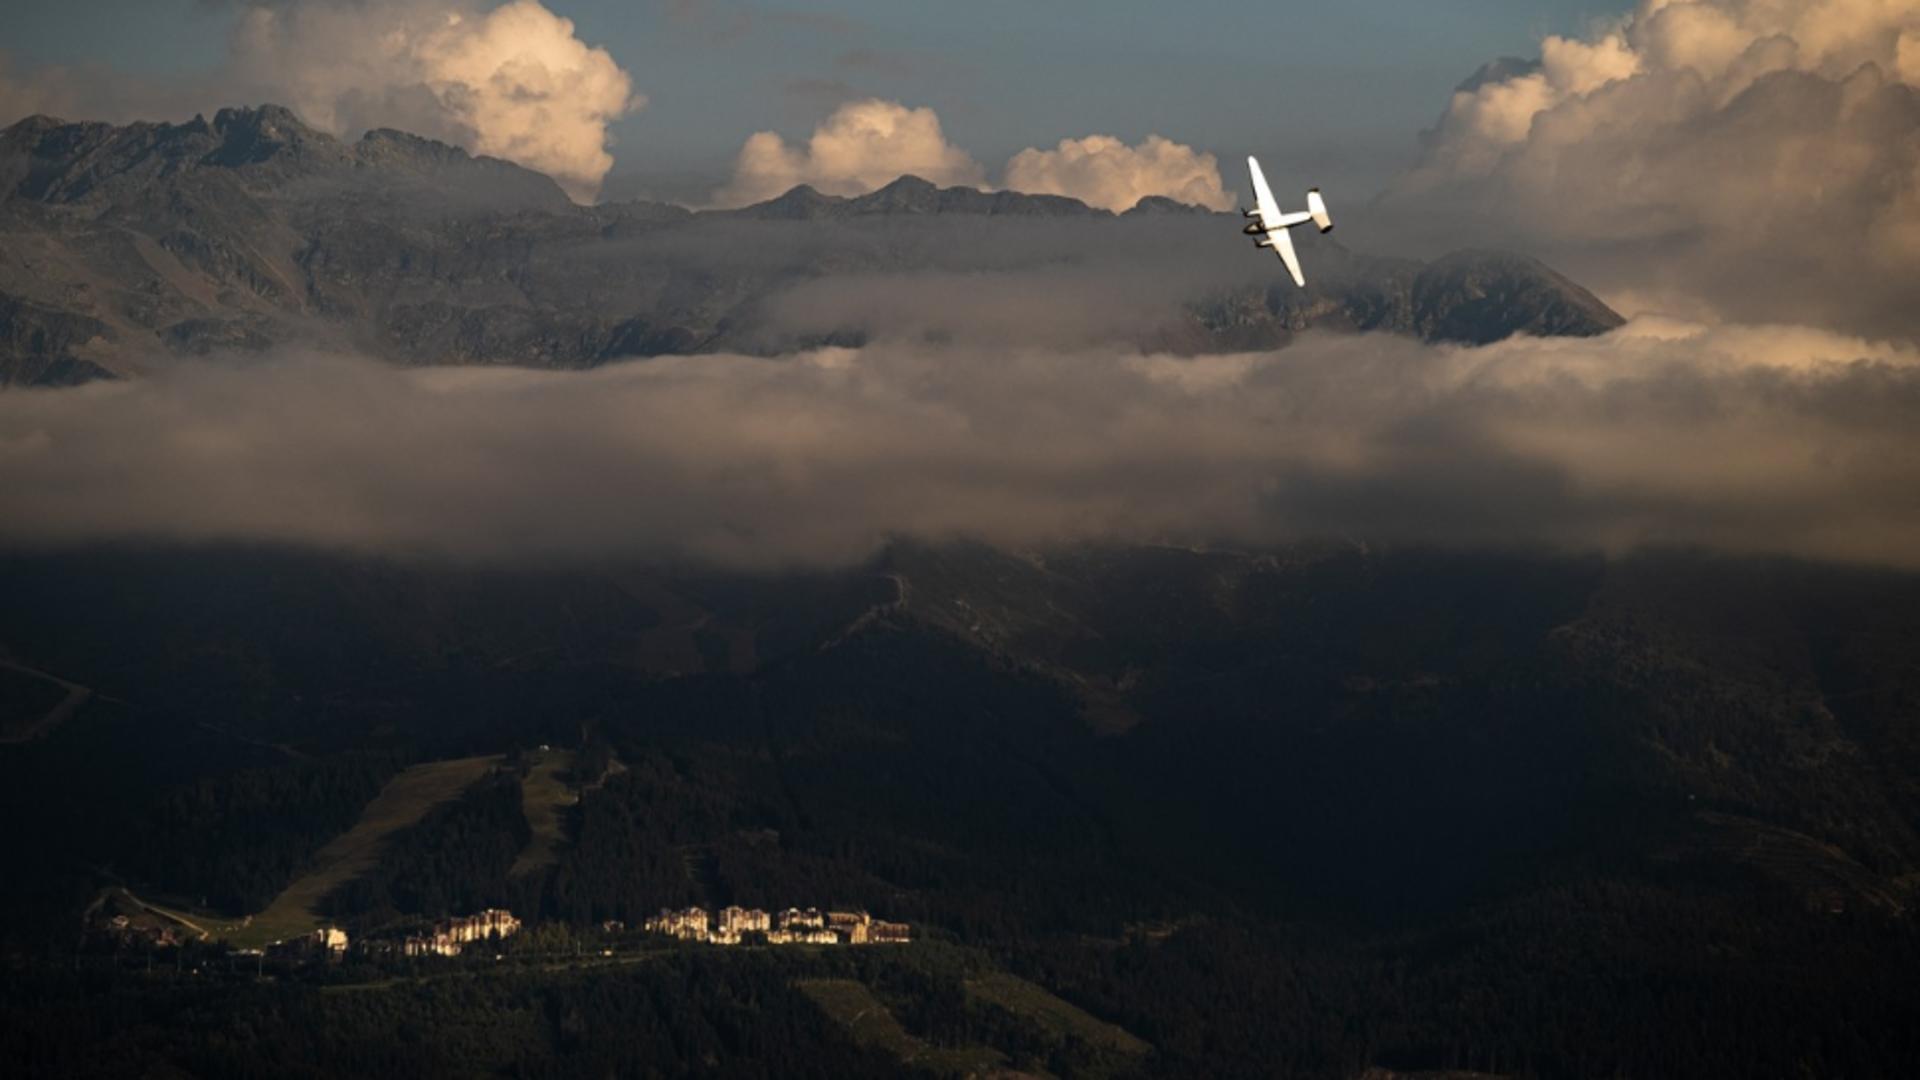 Tragedie aviatică, în Alpi: avion prăbușit / Foto: Profi Media, arhivă